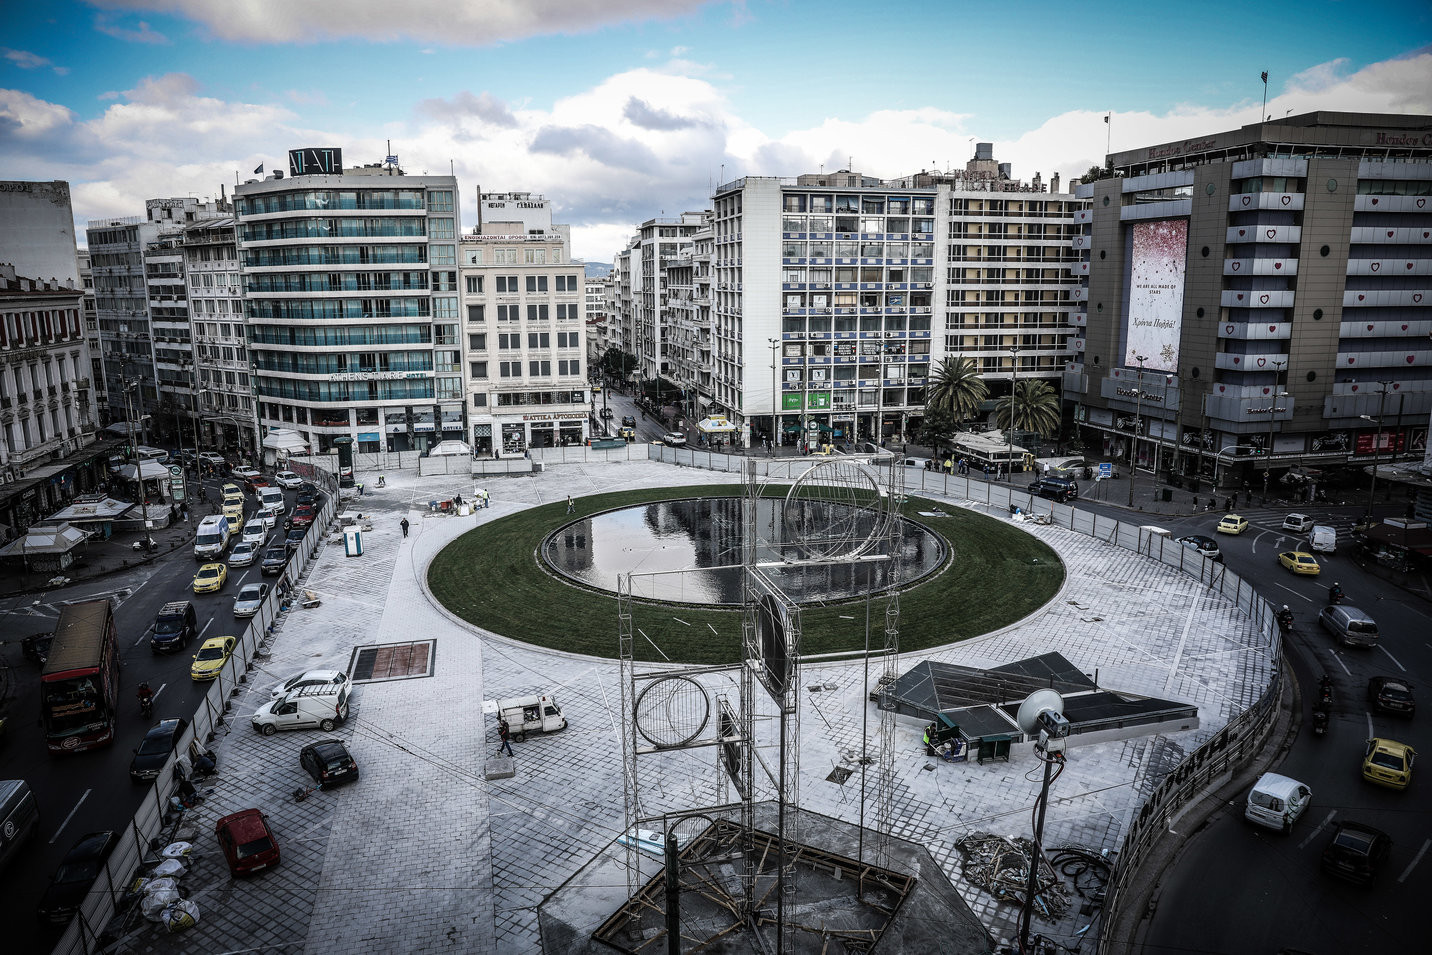 Αποσύρεται ενώπιον των αντιδράσεων η ρύθμιση για δημιουργία ξενοδοχείων – μαμούθ στο κέντρο της Αθήνας